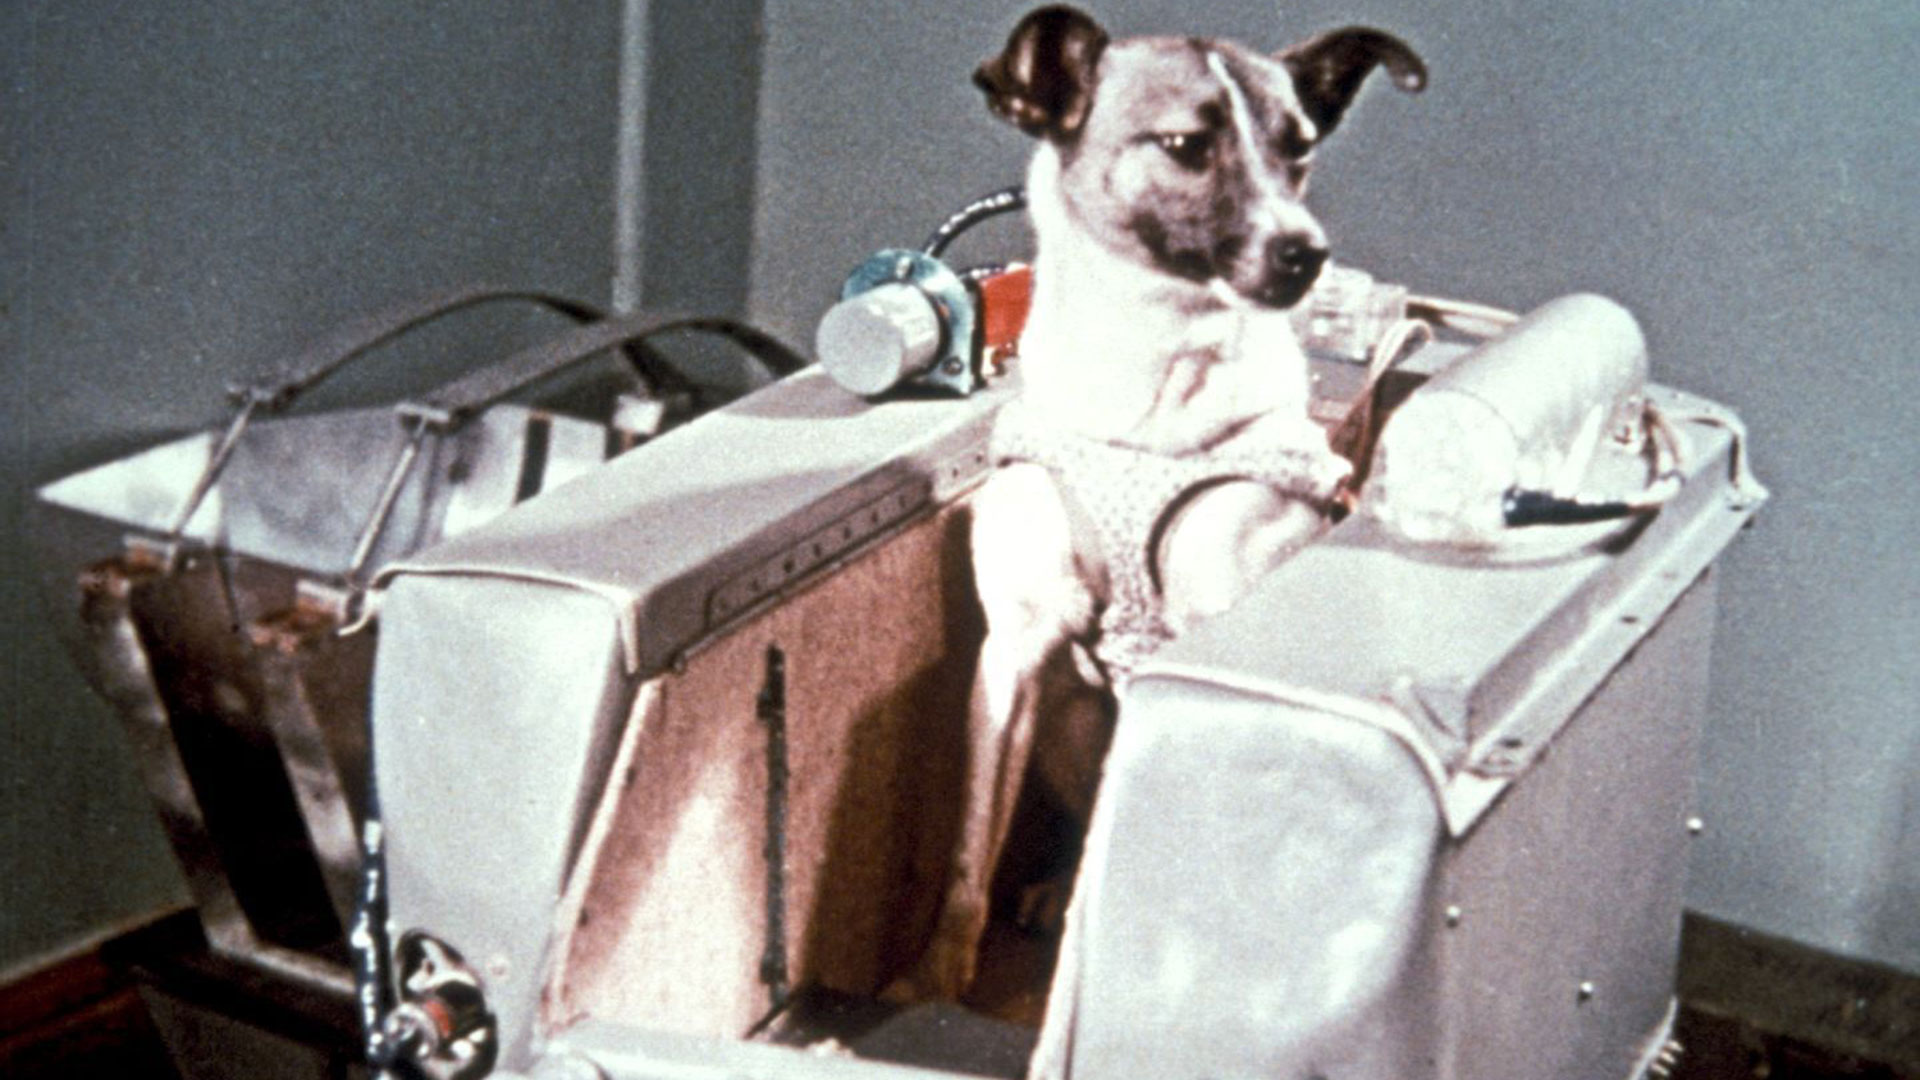 Laika era una perra dócil y simpática. Muchos años después, quienes la enviaron al espacio mostraron arrepentimiento